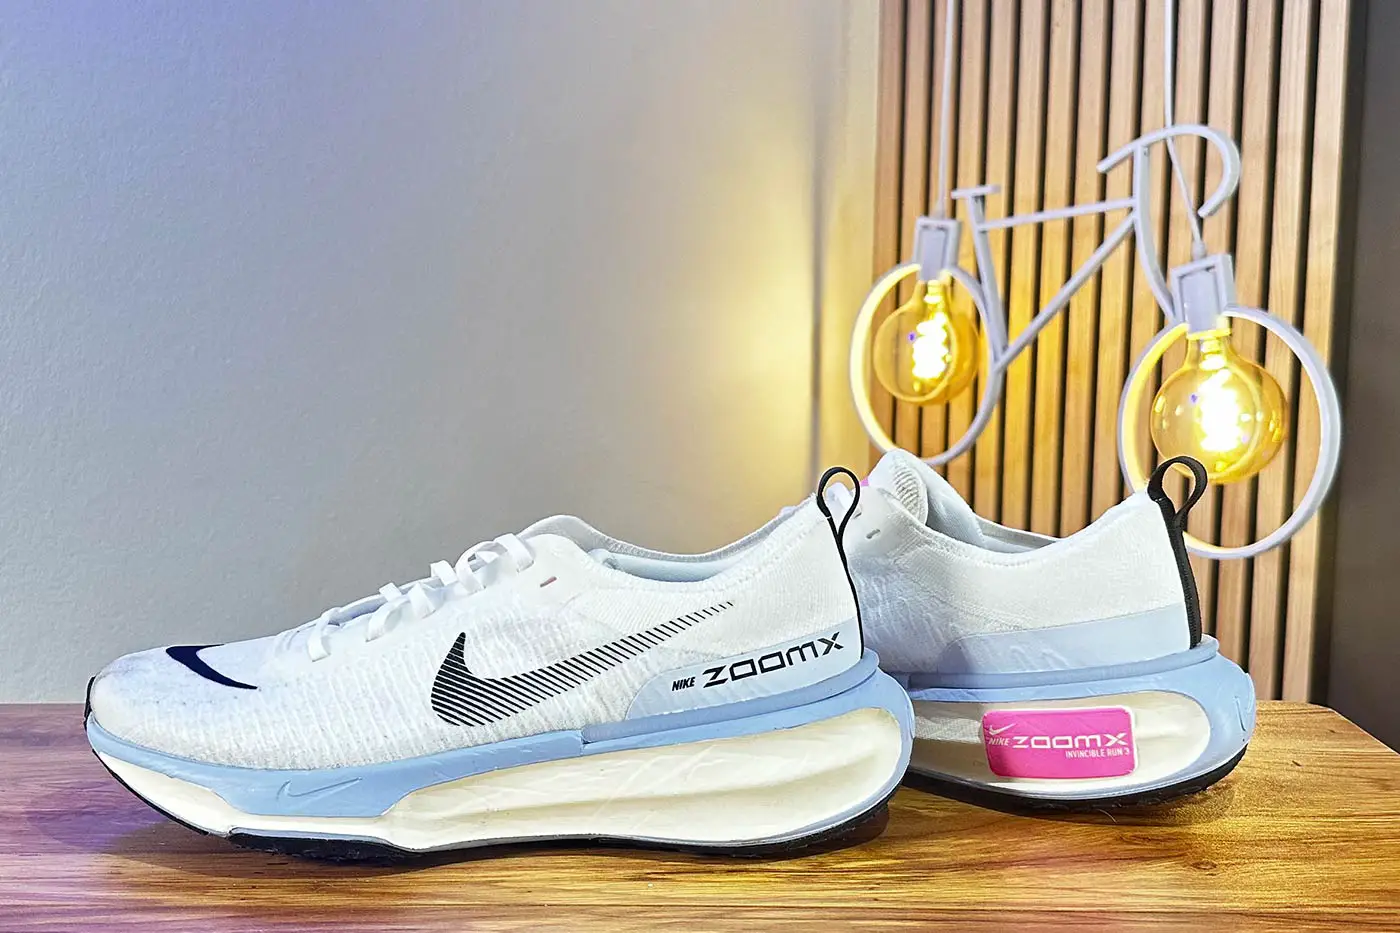 Nike Invincible 3 - Primeras impresiones - Correr una Maratón - Review de Garmin, Polar, COROS...